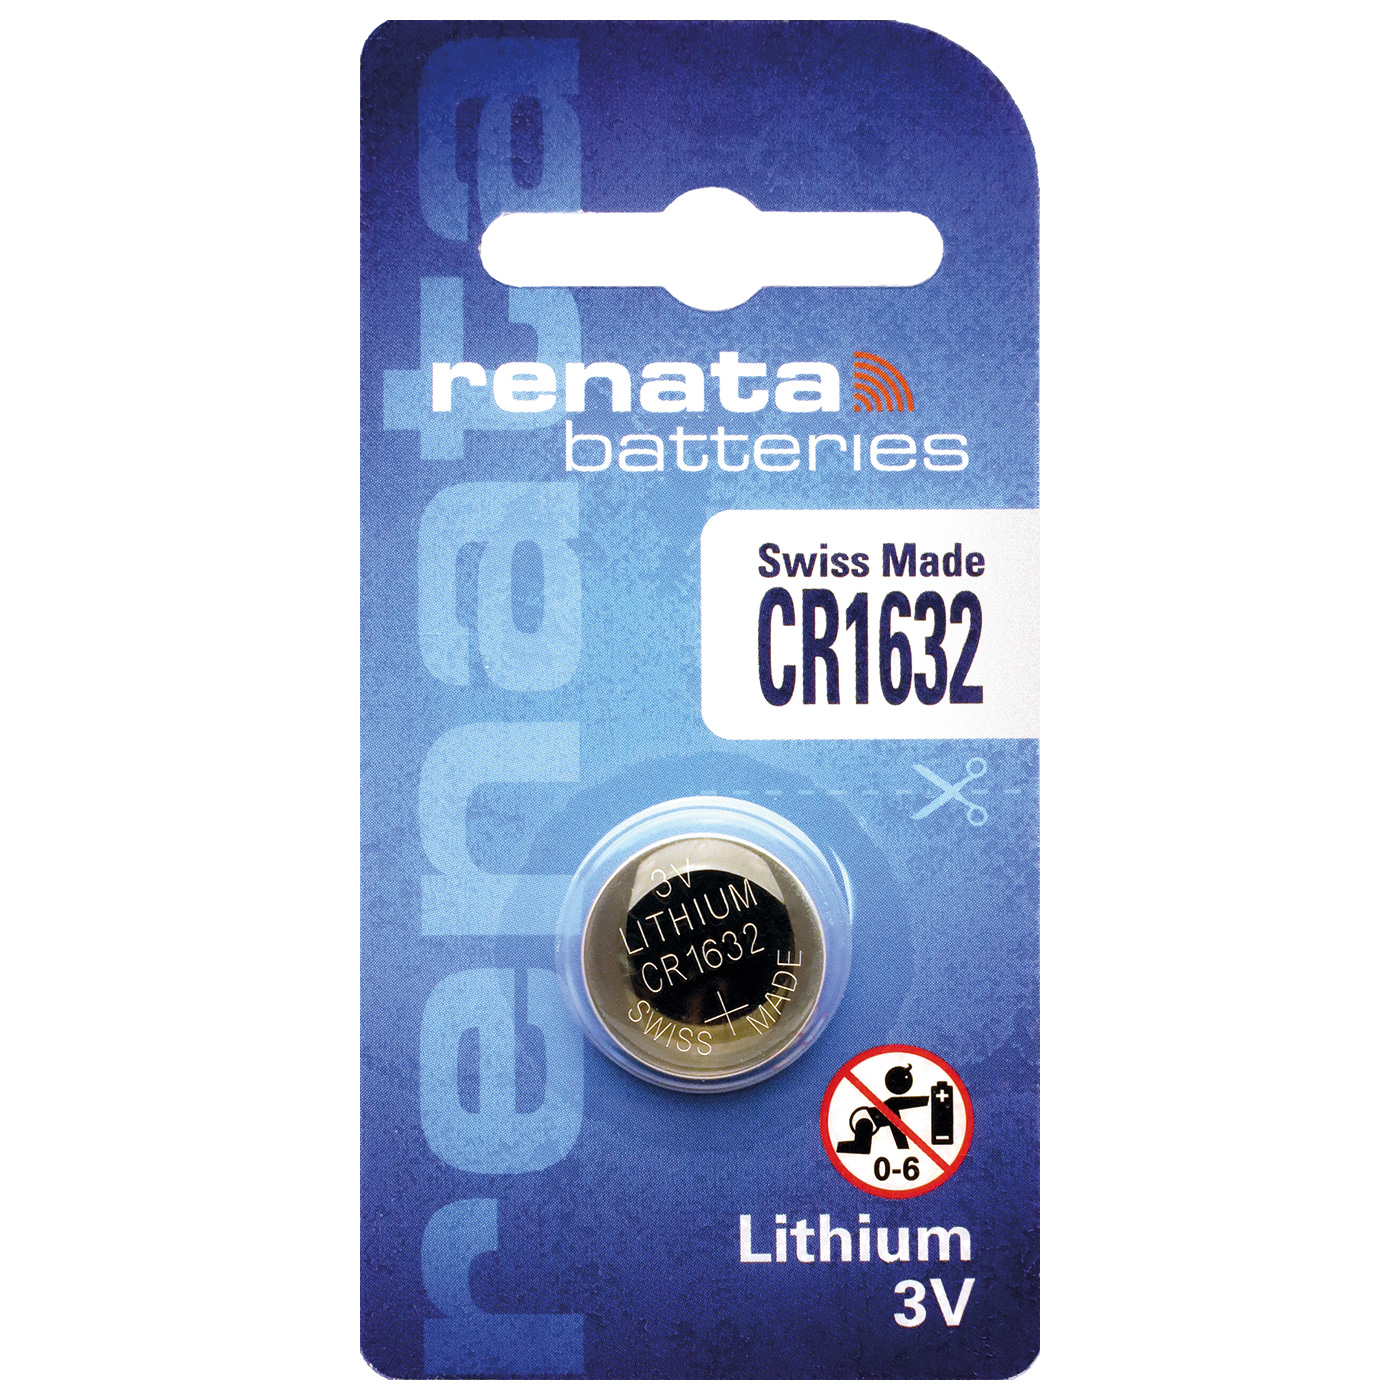 Renata CR 1632 lithium